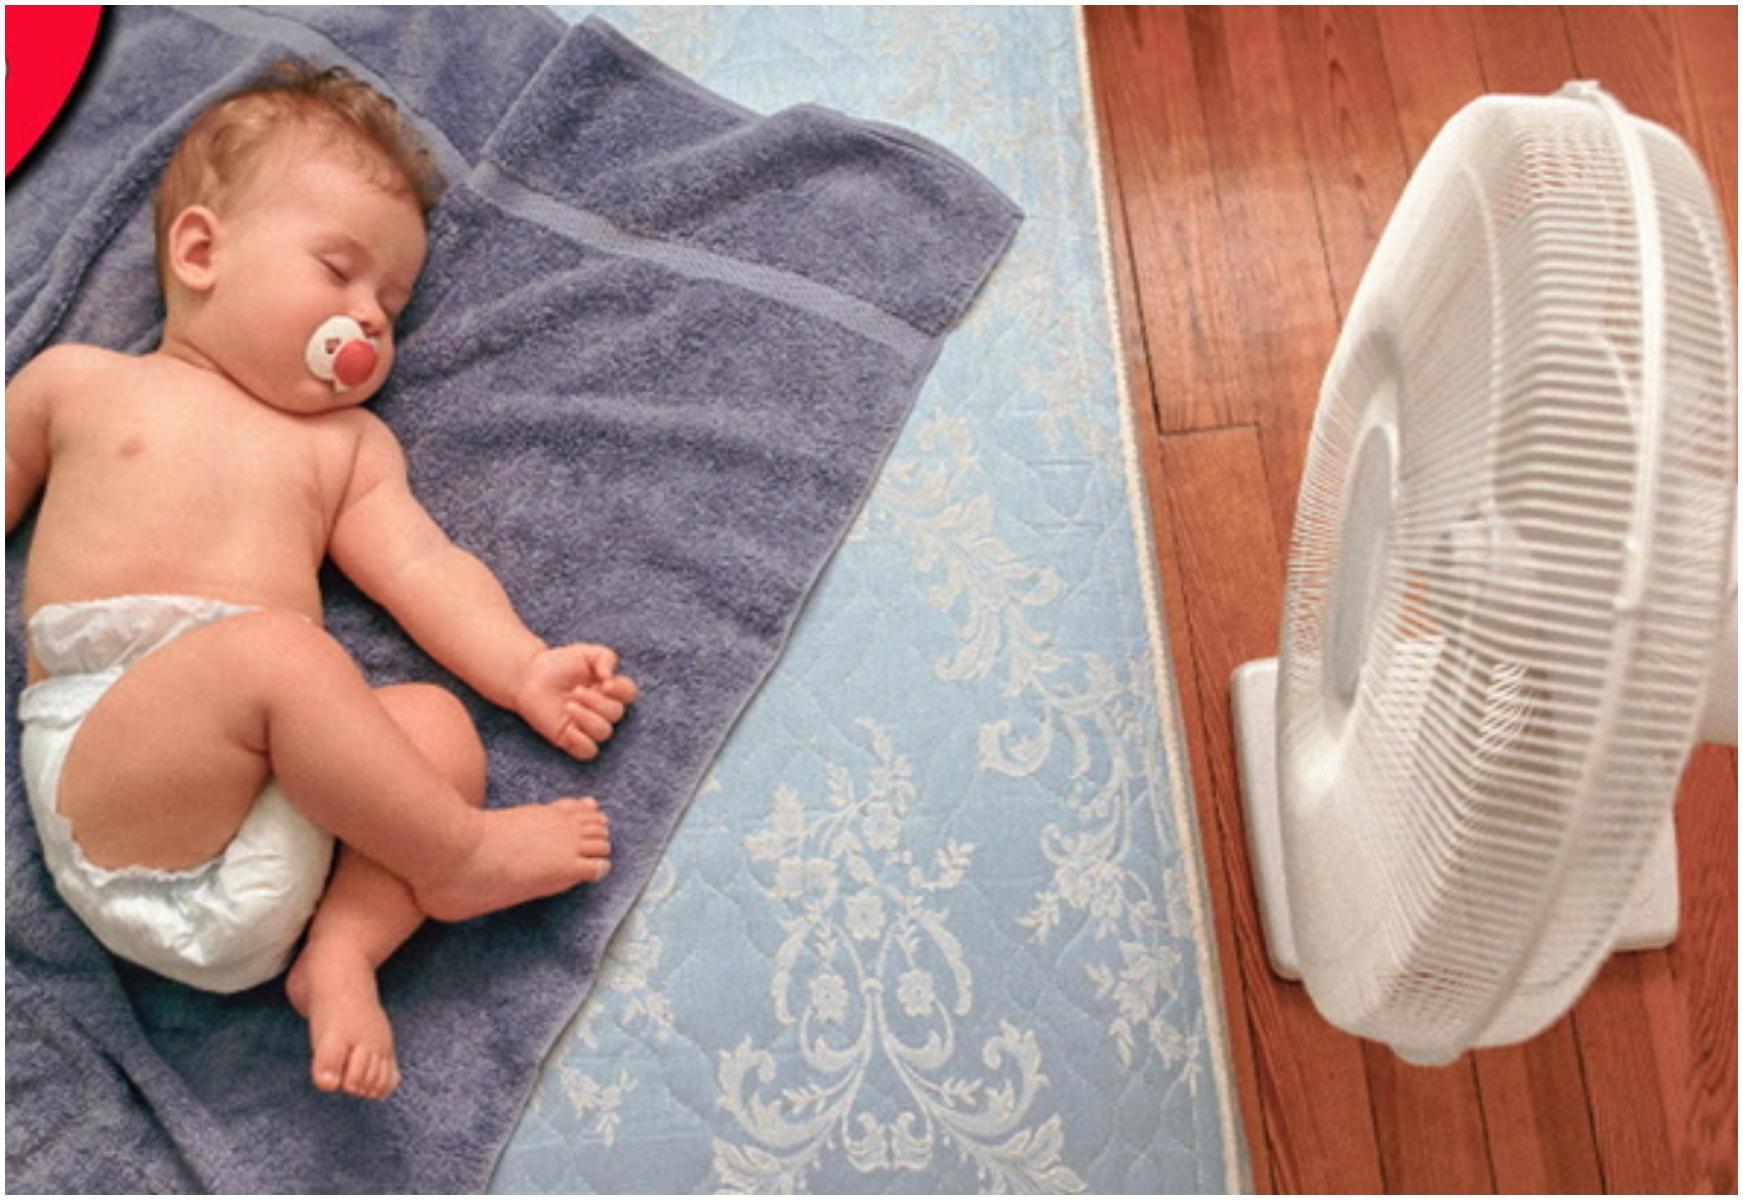 Πώς να κρατήσουμε το μωρό δροσερό στον ύπνο χωρίς κλιματισμό